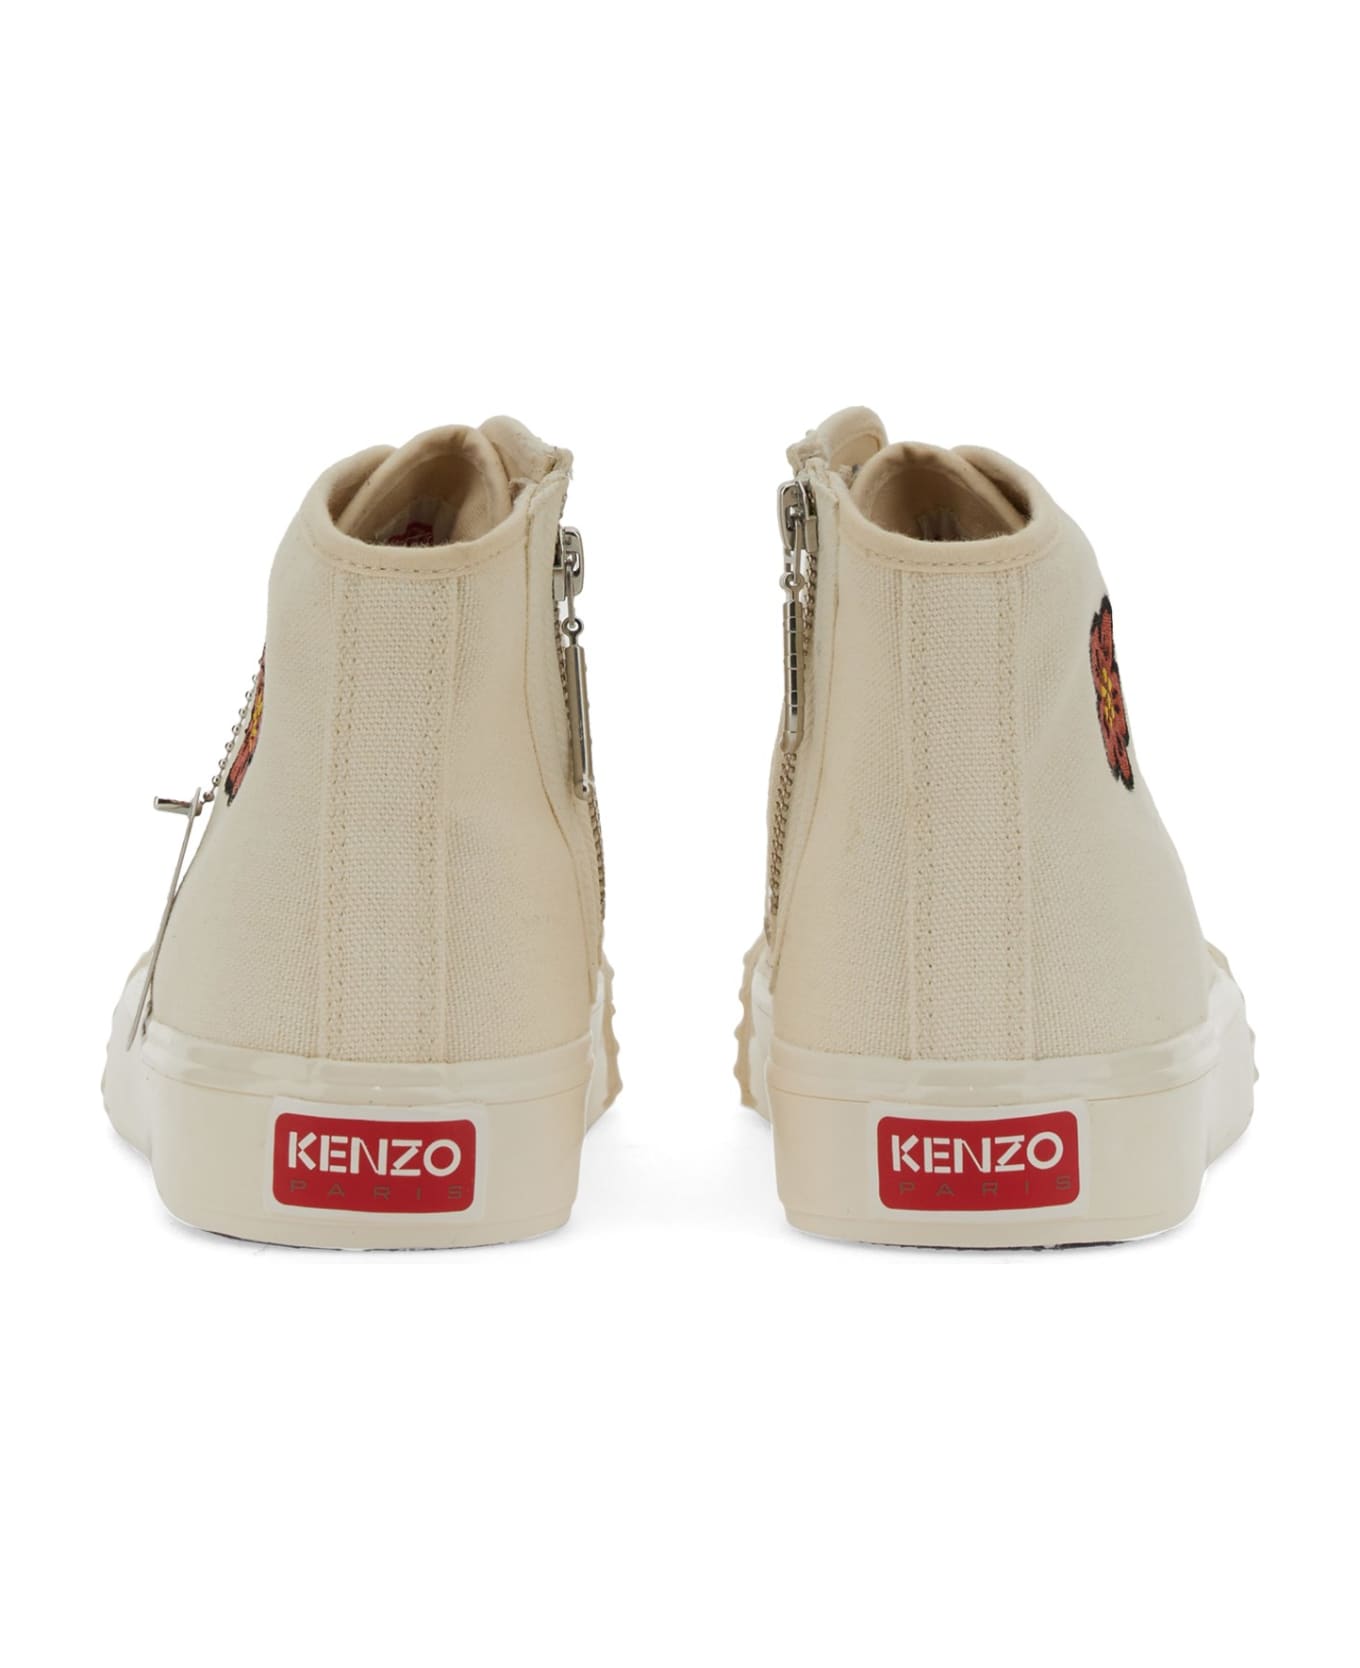 Kenzo School High-top Sneakers - Ivory スニーカー